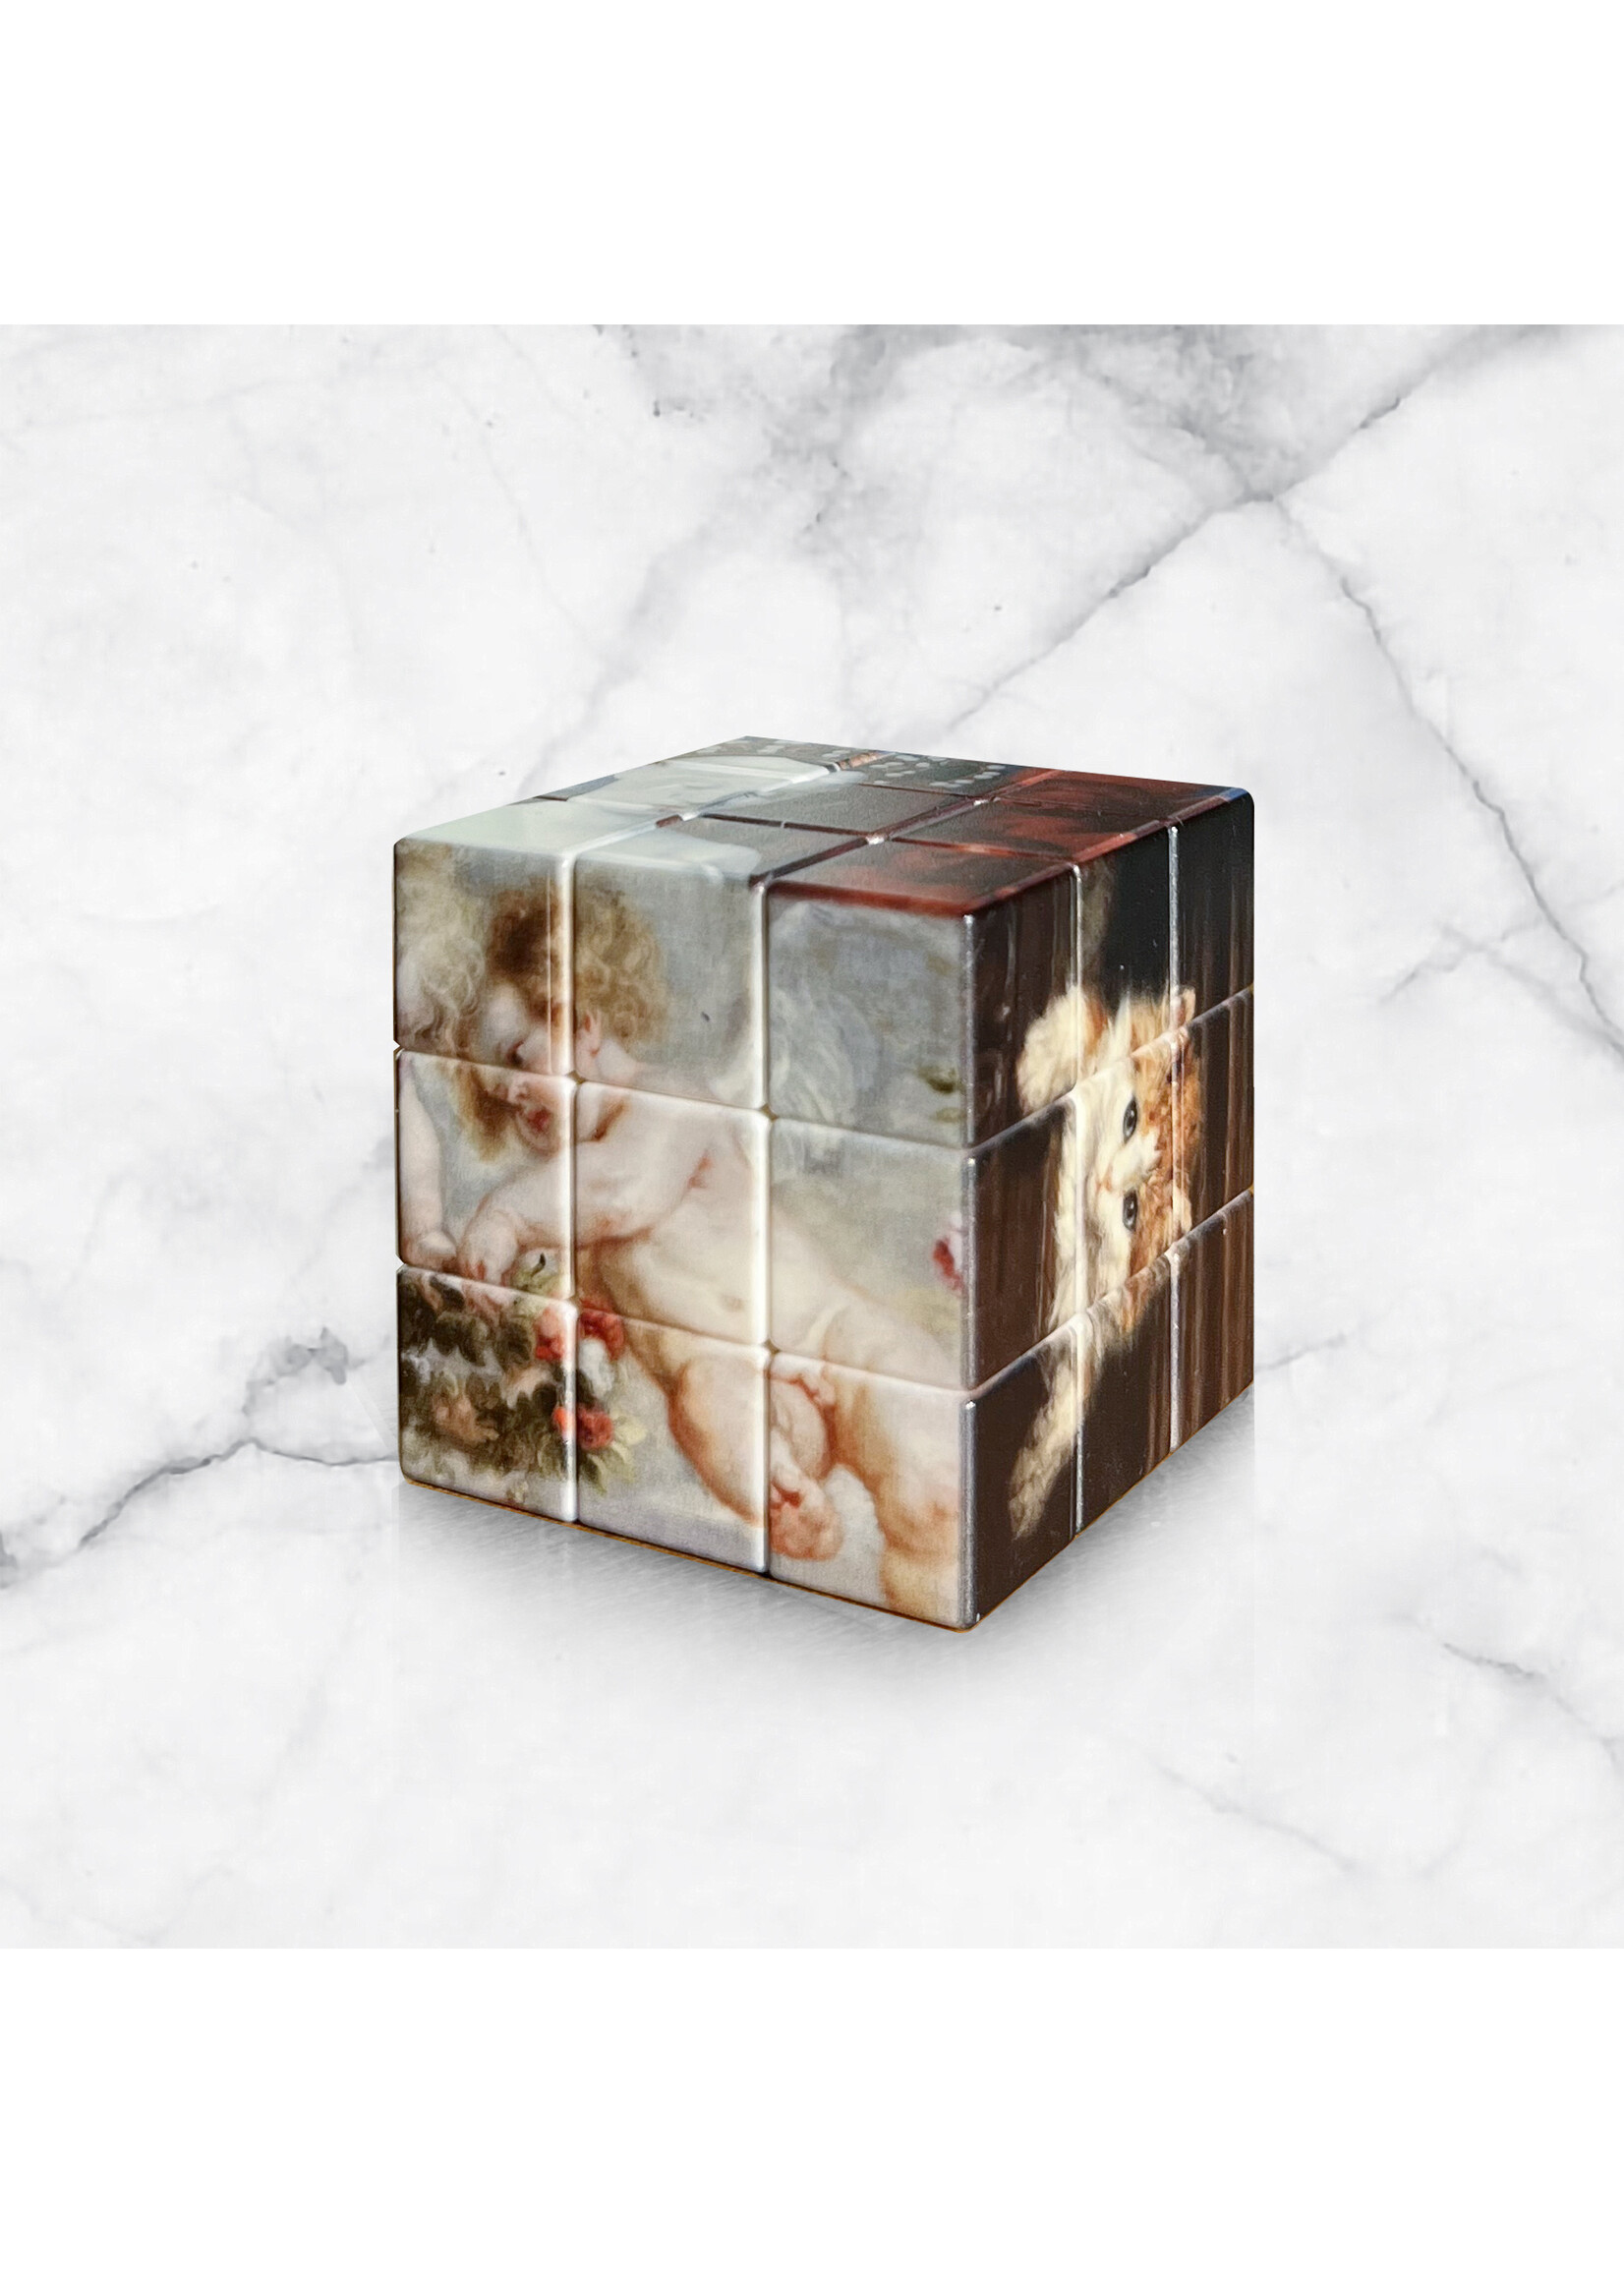 Artist Inspired Rubiks Cube